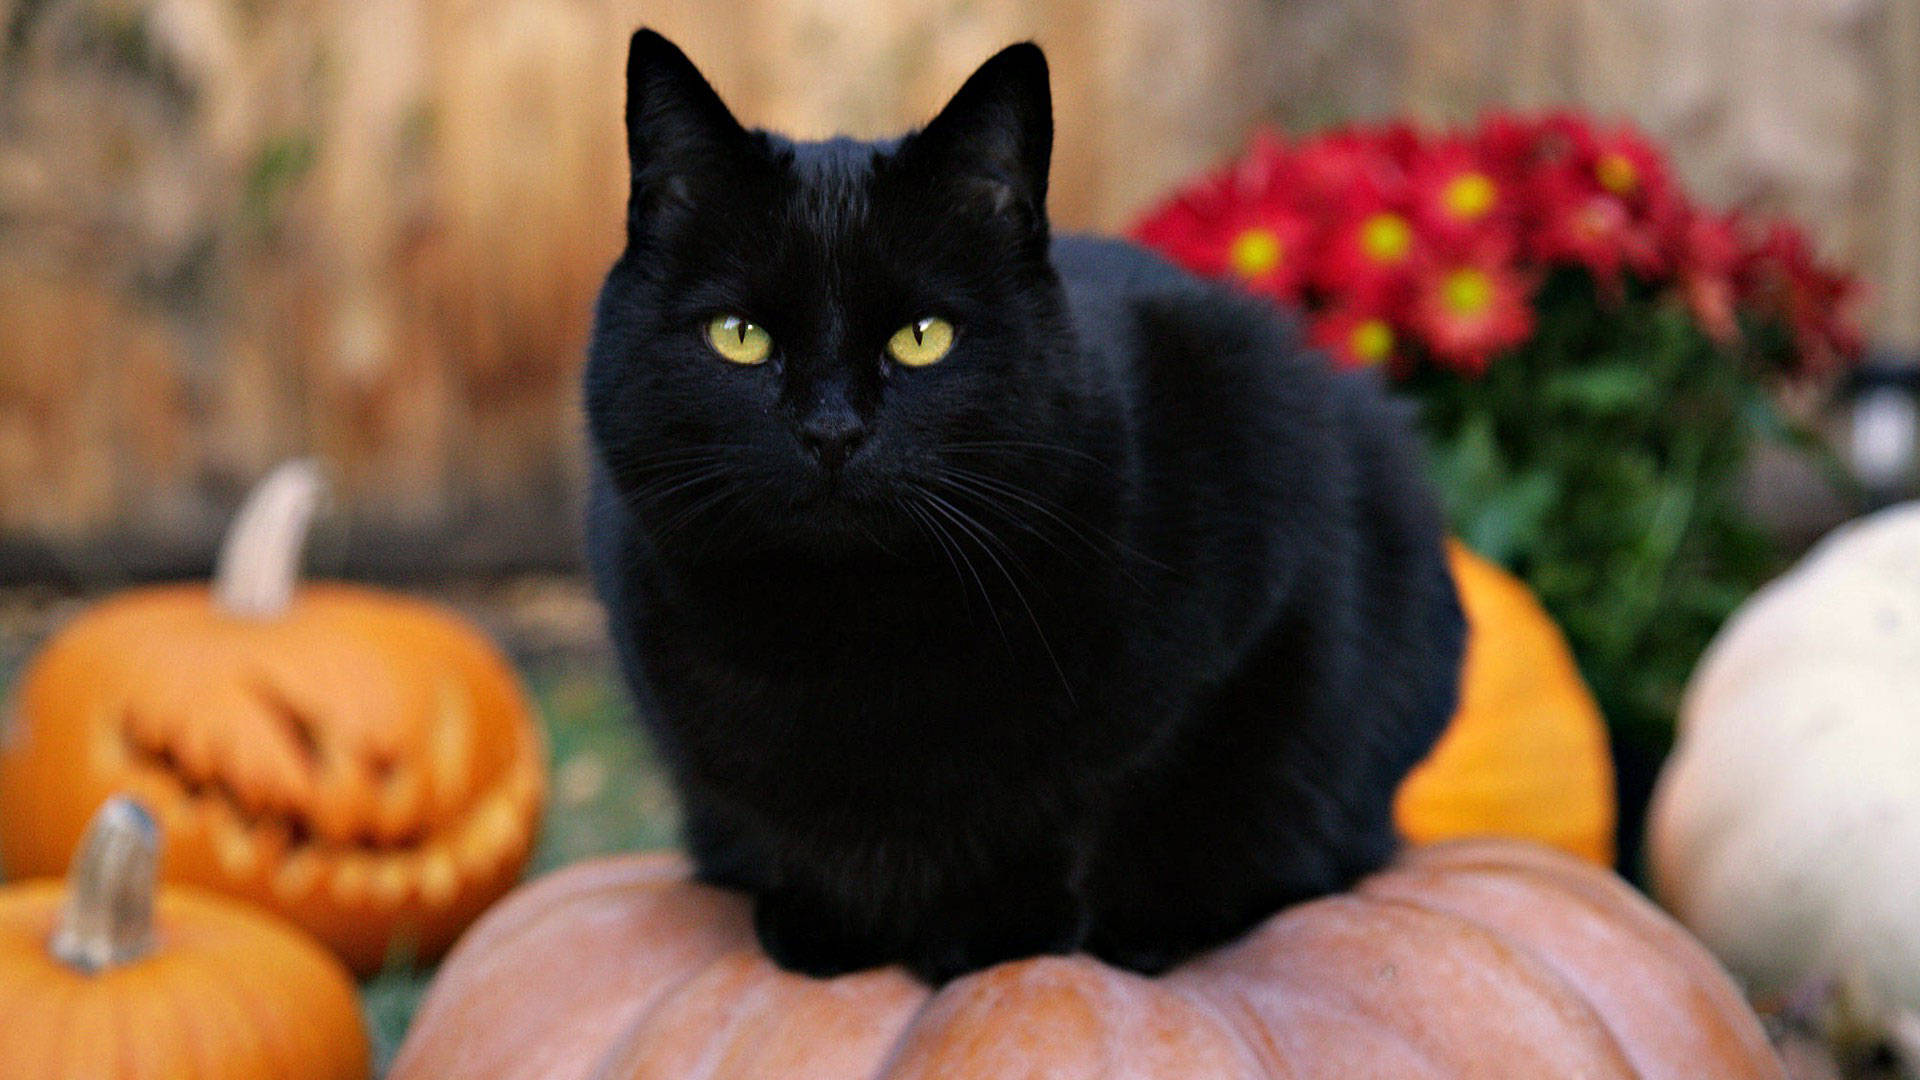 Cute Black Fluffy Cat